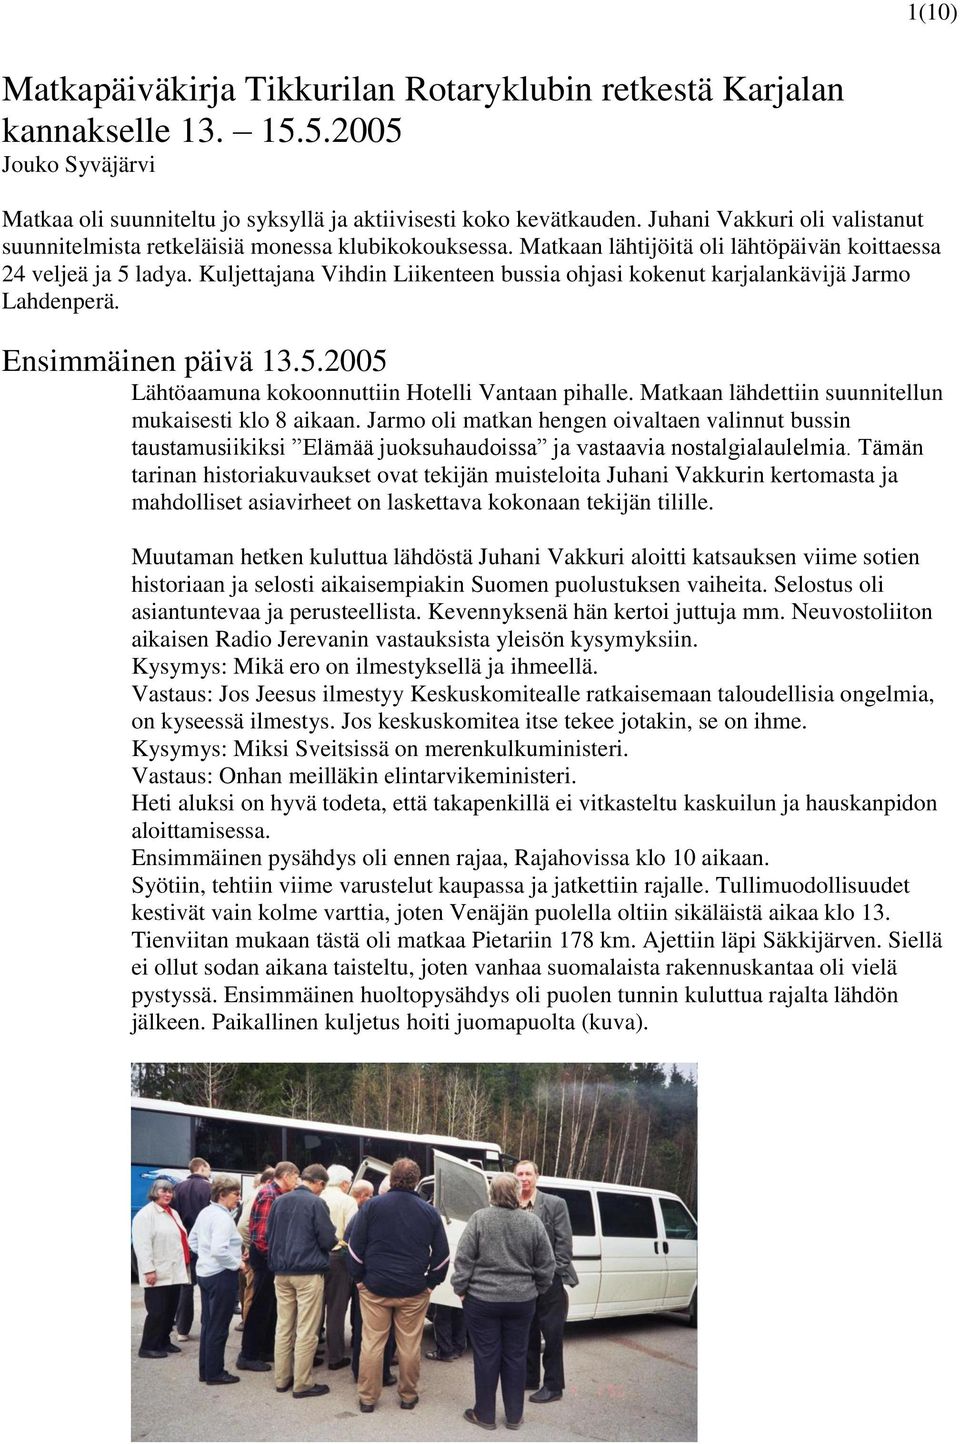 Kuljettajana Vihdin Liikenteen bussia ohjasi kokenut karjalankävijä Jarmo Lahdenperä. Ensimmäinen päivä 13.5.2005 Lähtöaamuna kokoonnuttiin Hotelli Vantaan pihalle.